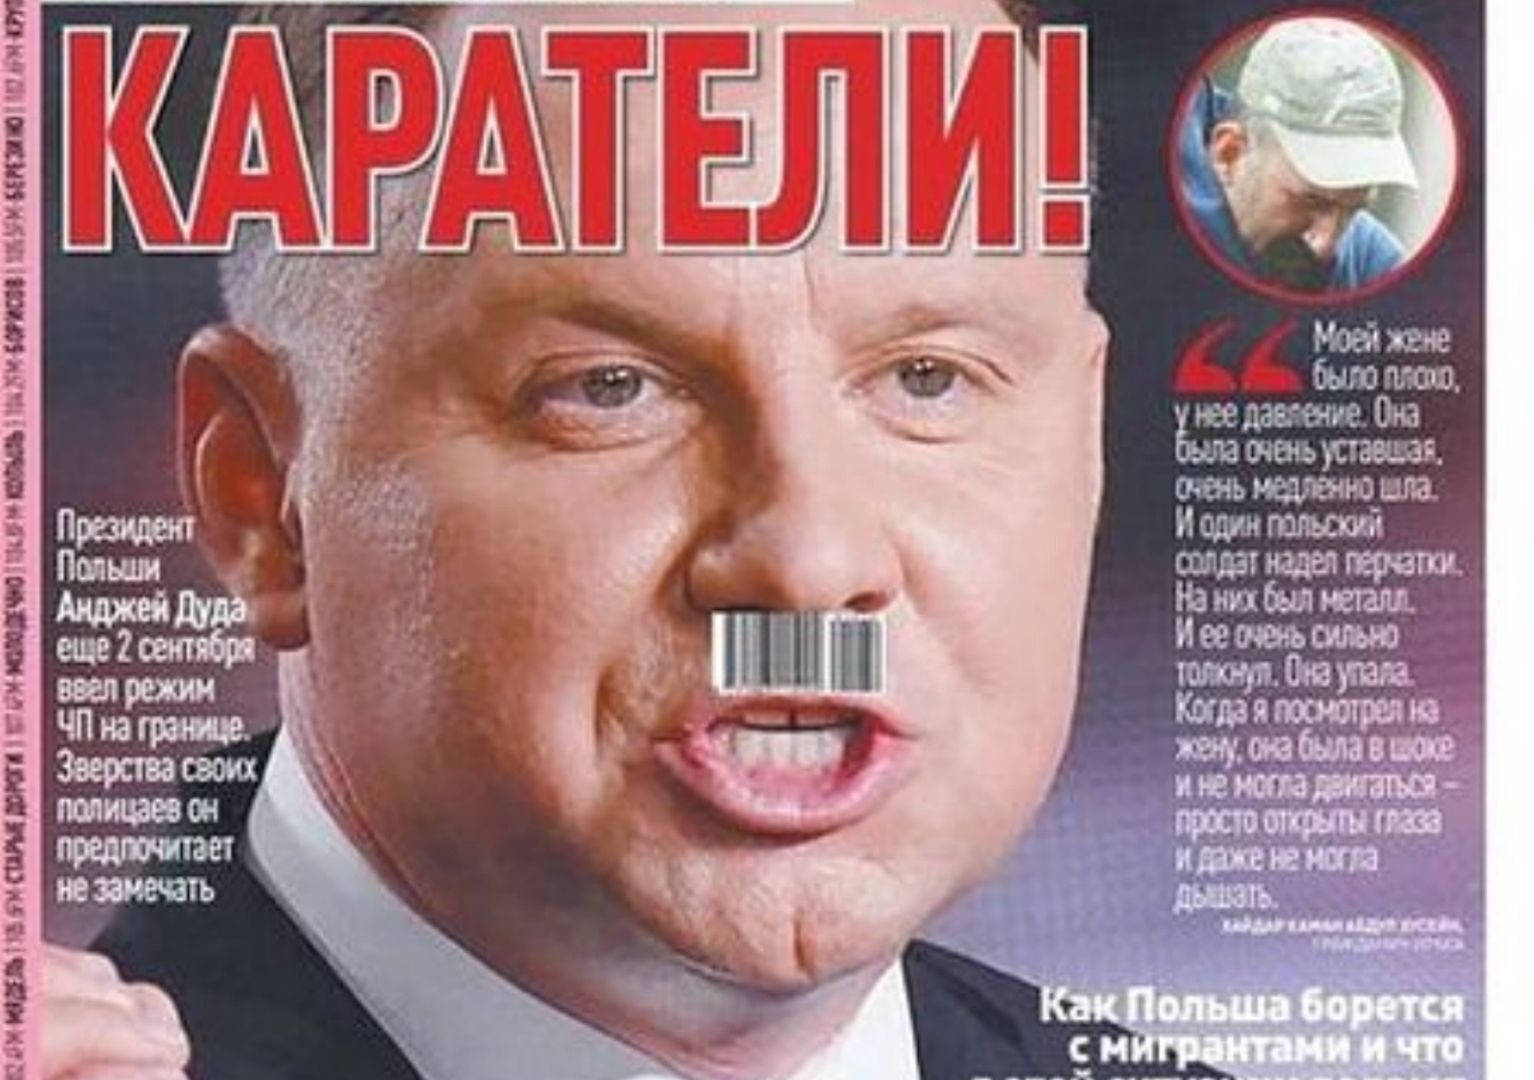 Skandaliczna okładka białoruskiego dziennika. Jest reakcja Kancelarii Prezydenta